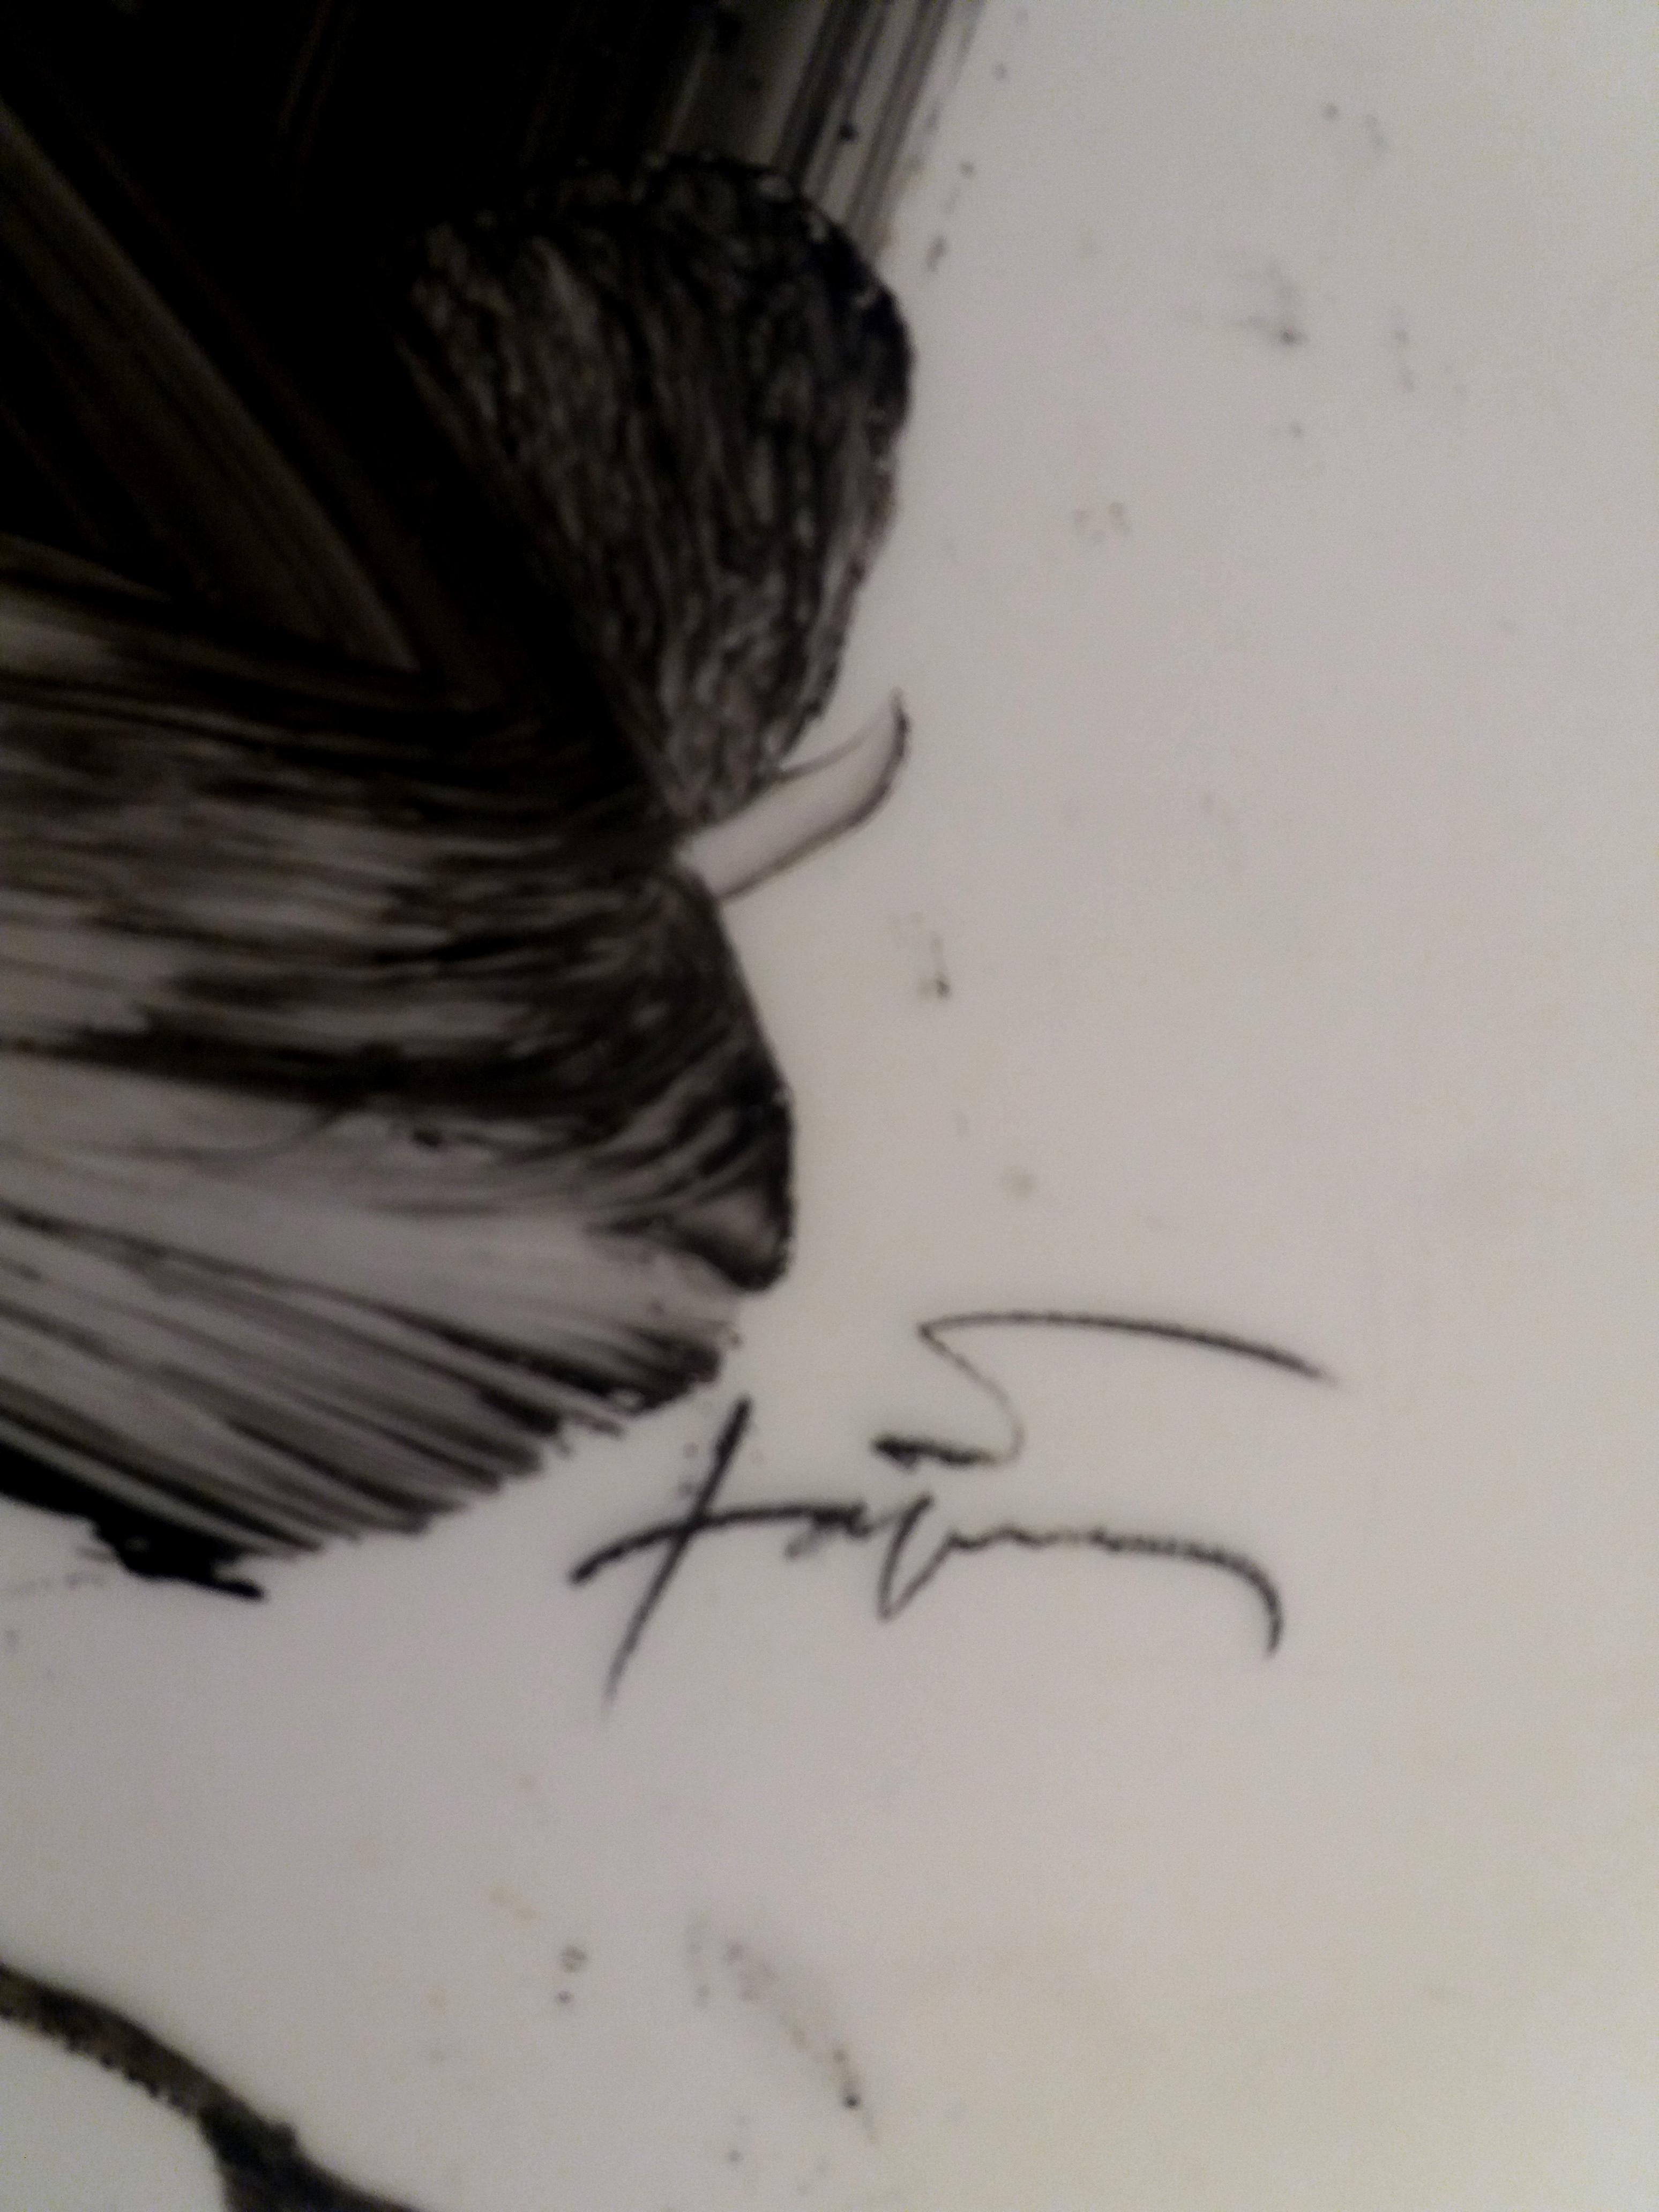 TAPIES  abstraktes Pauspapier schwarz/weiß
Dies ist eine Vorstudie für eine Lithographie
Antoni Tàpies' erste künstlerische Versuche begannen während einer langen Rekonvaleszenz nach einer schweren Krankheit, nach der ihn seine zunehmende Hingabe an